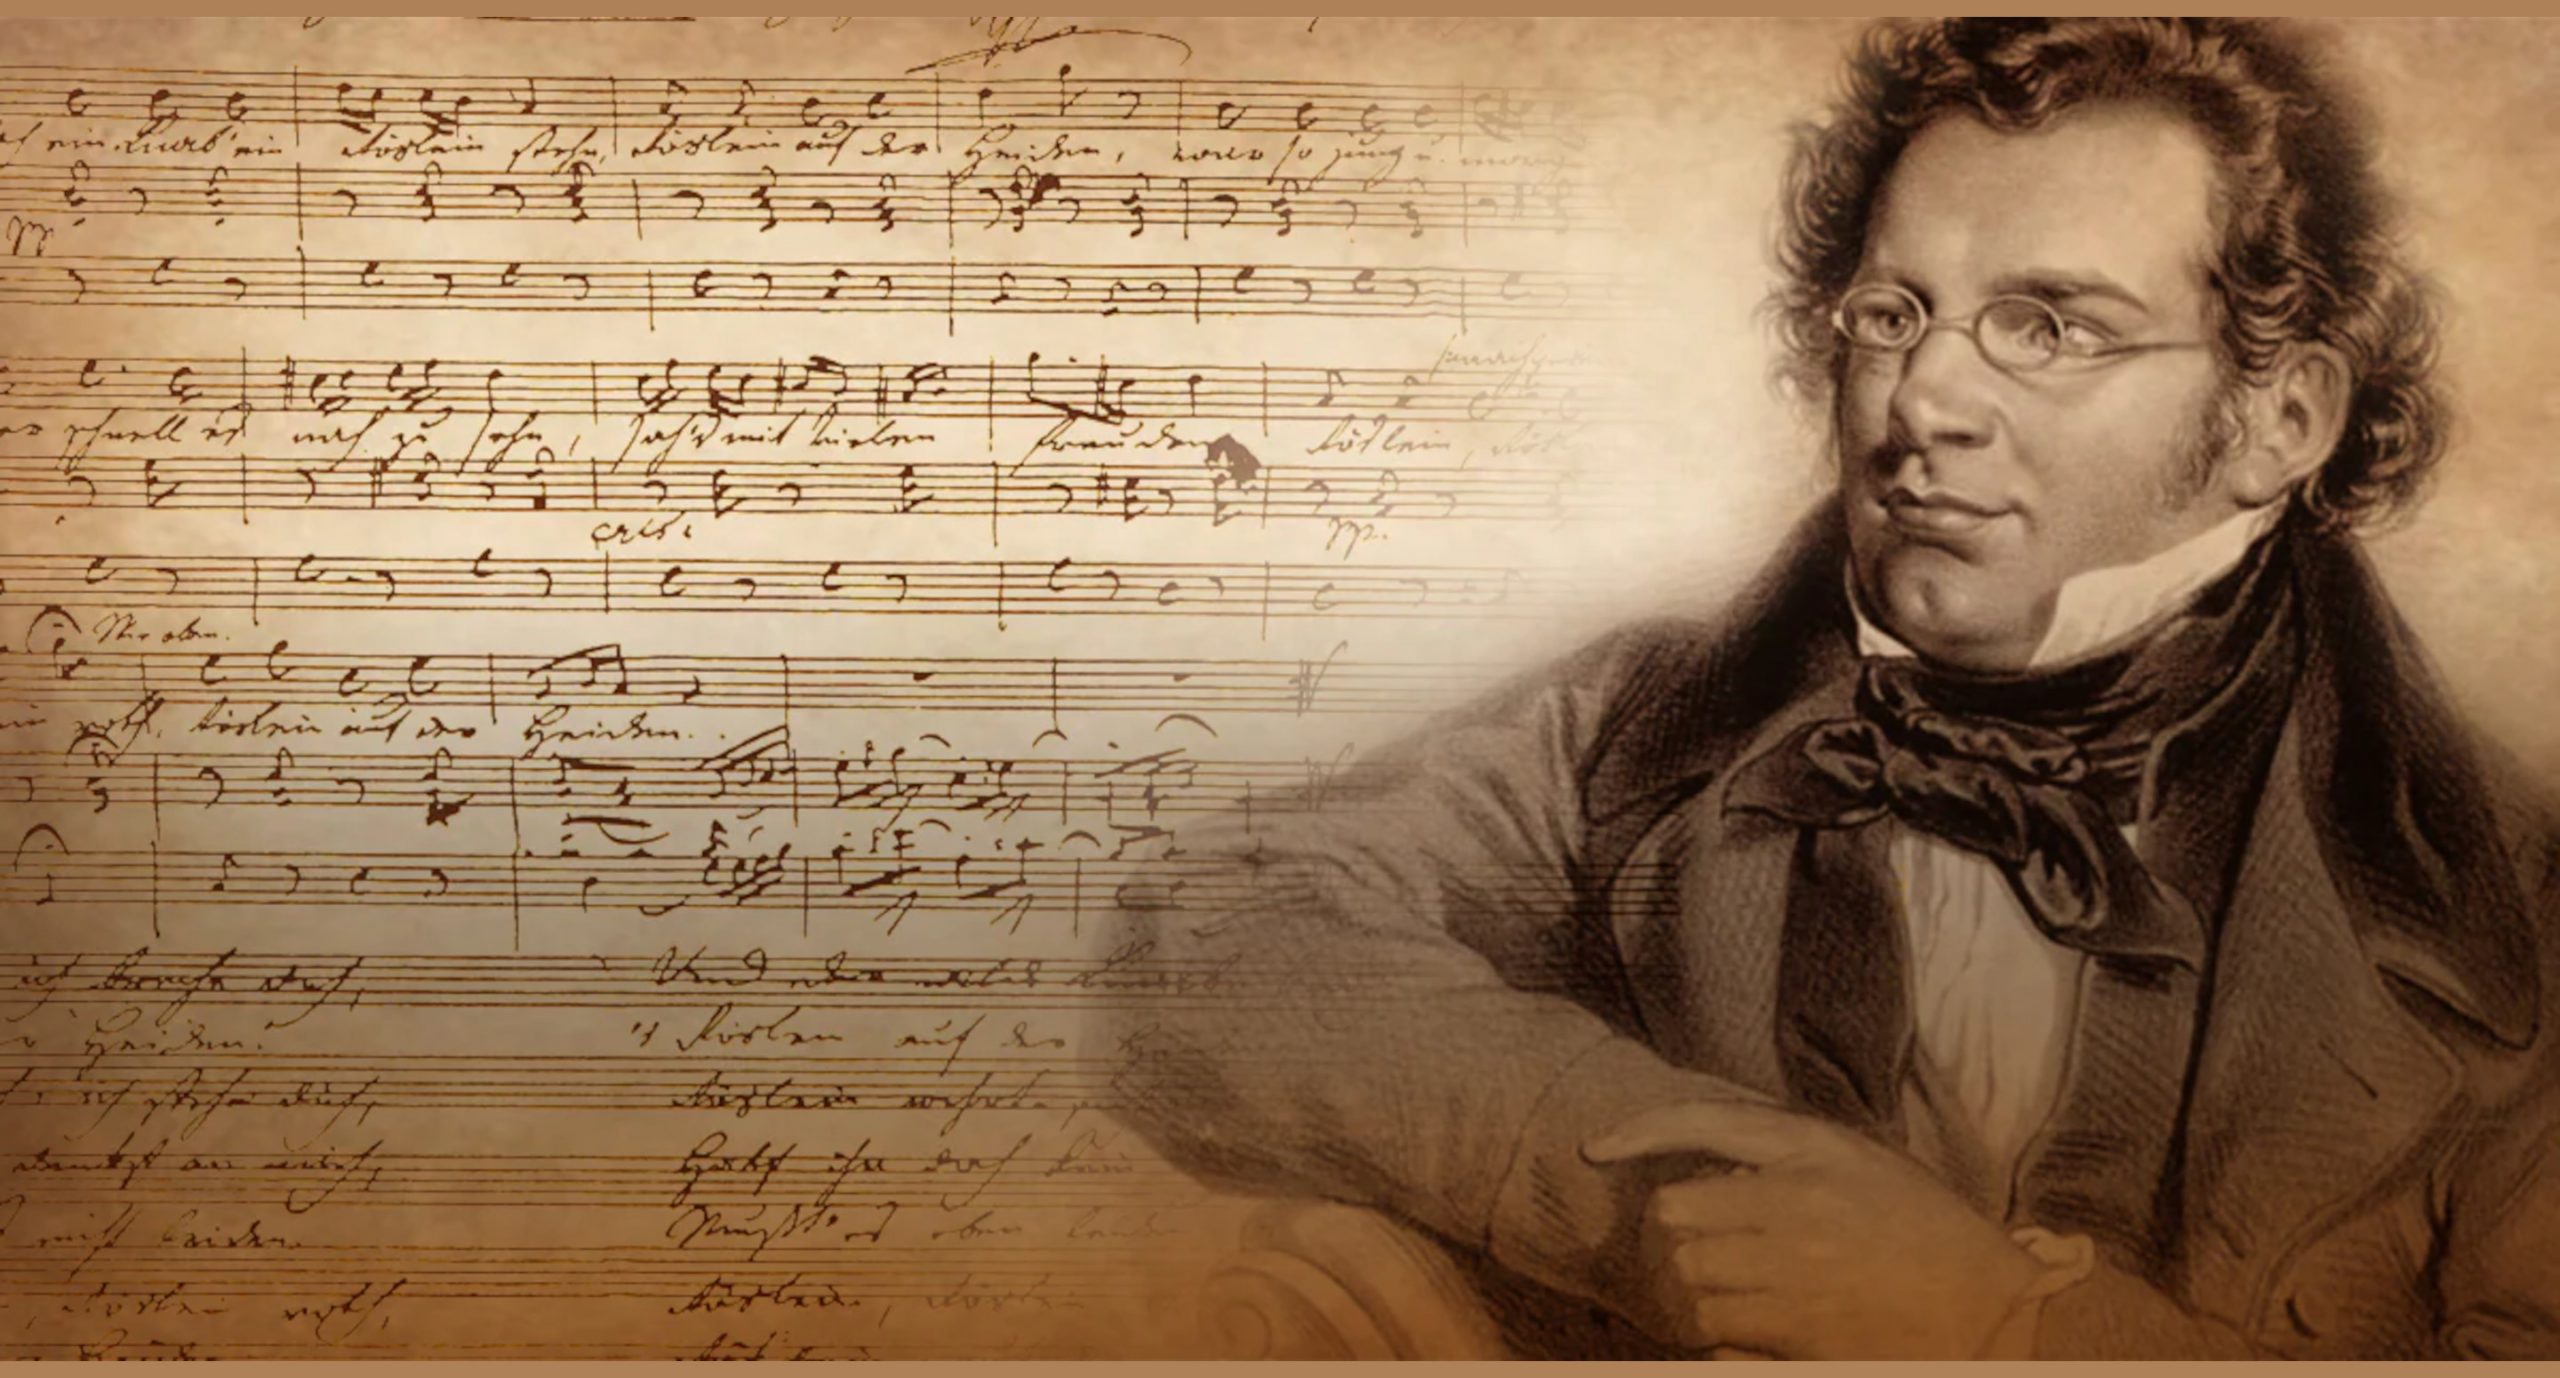 La Grande Symphonie de Schubert